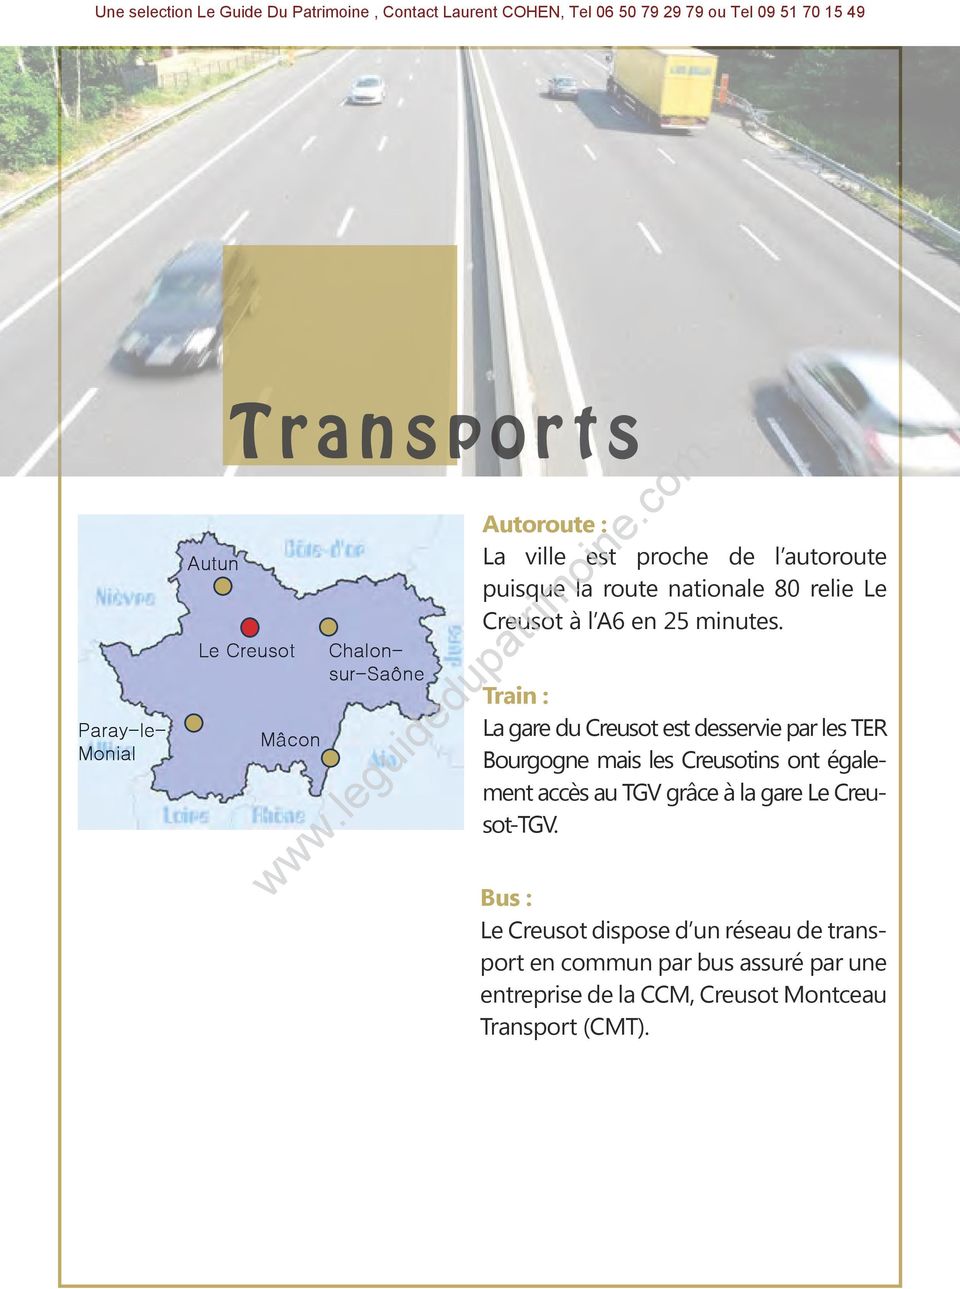 Train : La gare du Creusot est desservie par les TER Bourgogne mais les Creusotins ont également accès au TGV grâce